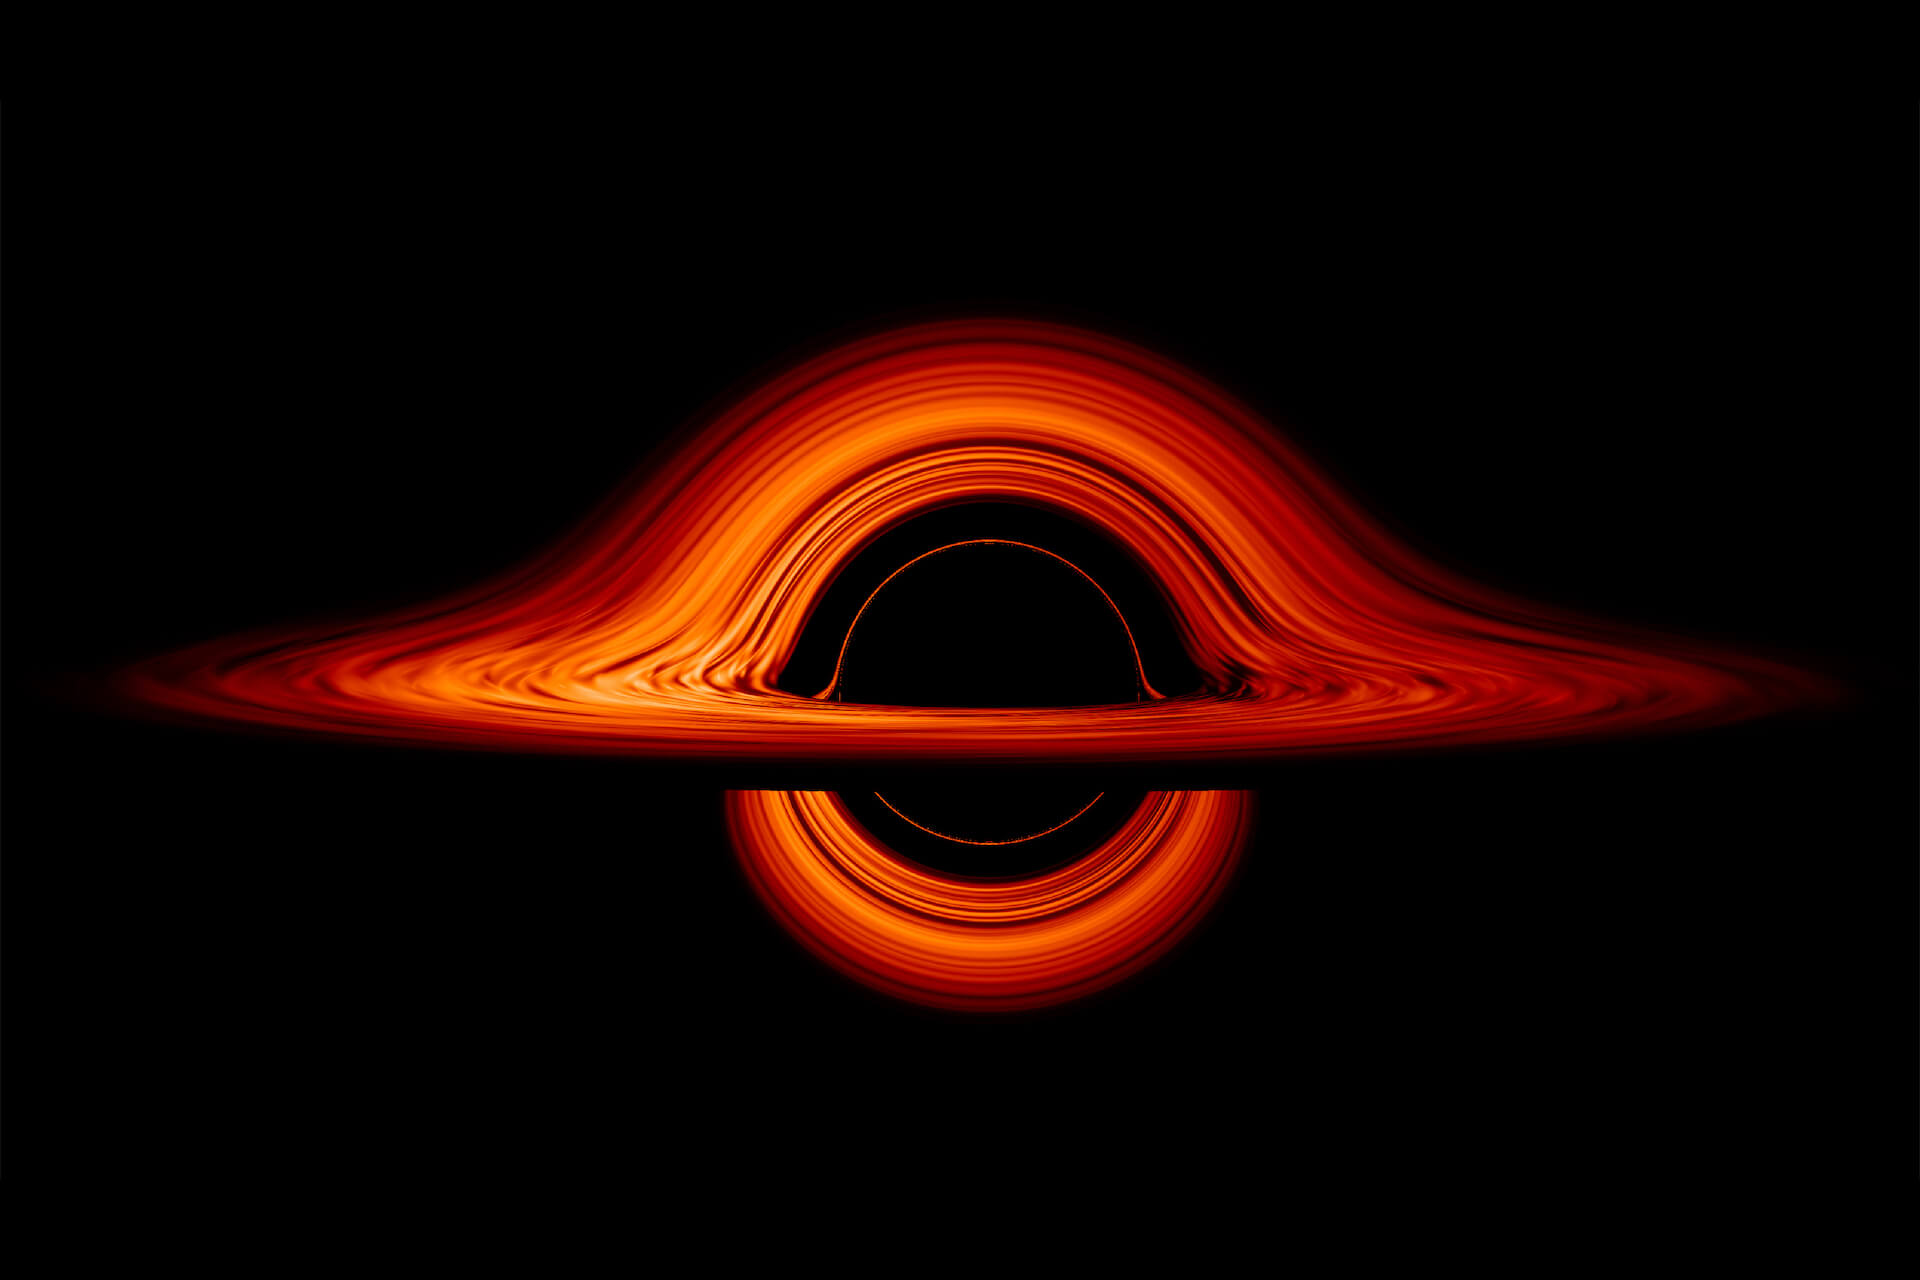 映画『インターステラー』そのまま？NASAが公開したブラックホールの最新ヴィジュアルが話題に technology190930-blackhole-intersteller